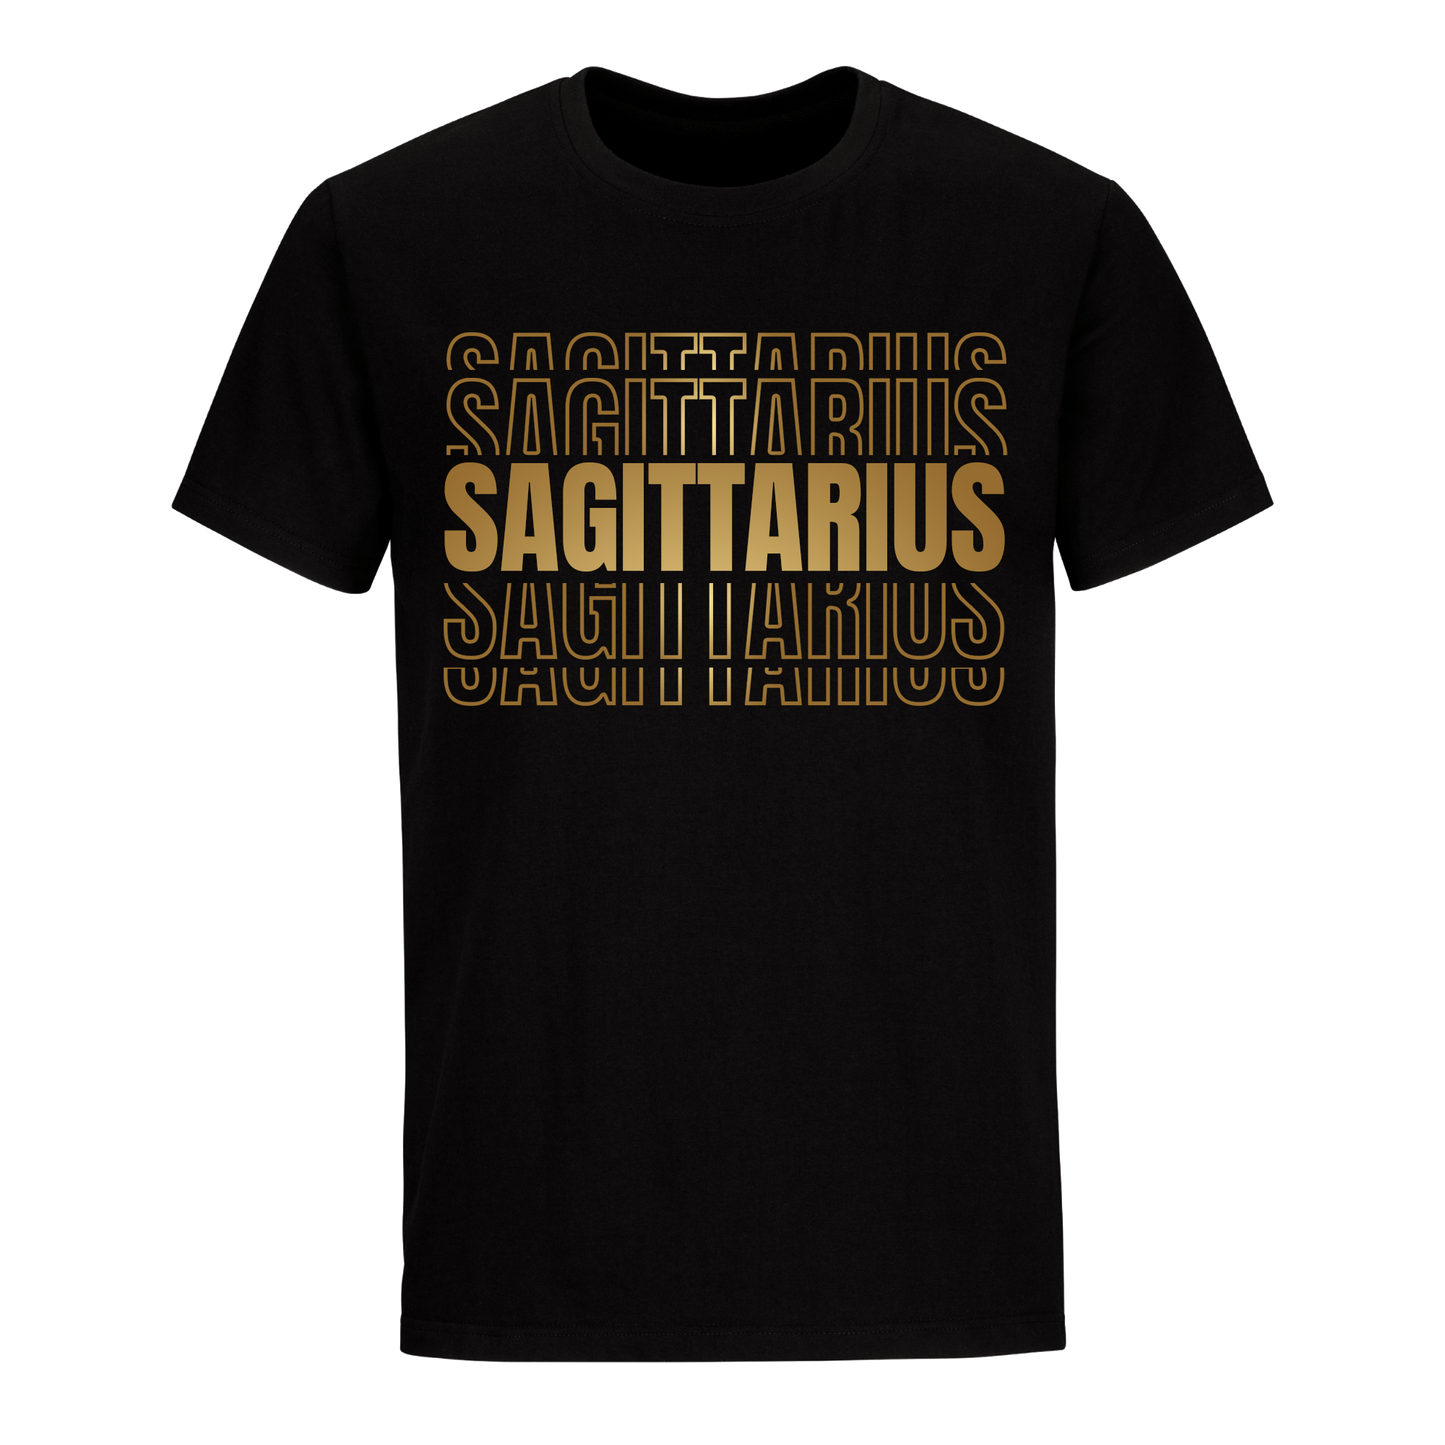 SAGITTARIUS UNISEX SHIRT